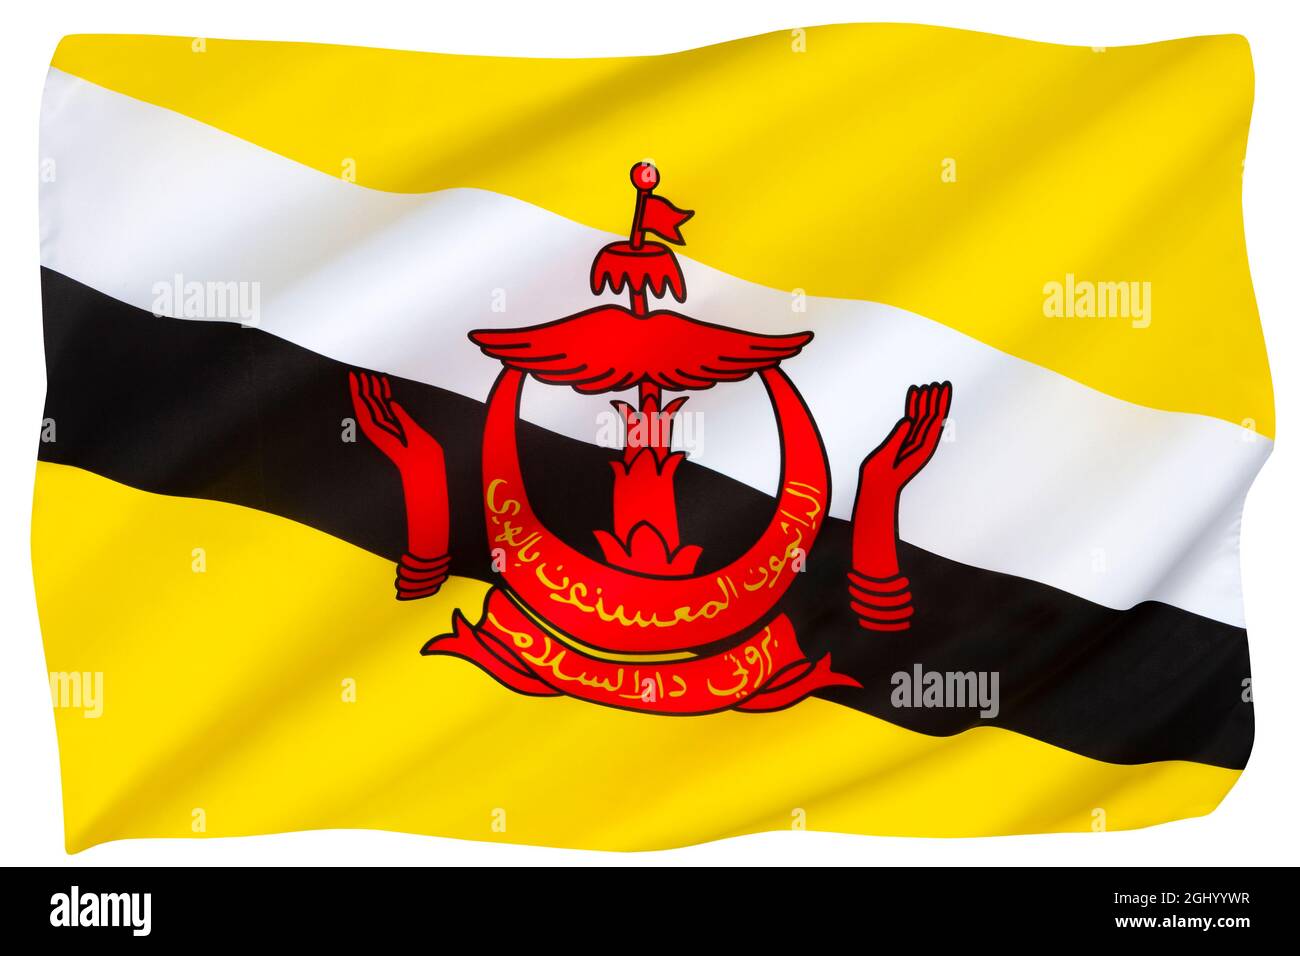 Bandiera del Brunei - nel sud-est asiatico, il giallo è tradizionalmente il colore della regalità. La mezzaluna simboleggia l'Islam, l'ombrellone simboleggia la monarchia, e. Foto Stock